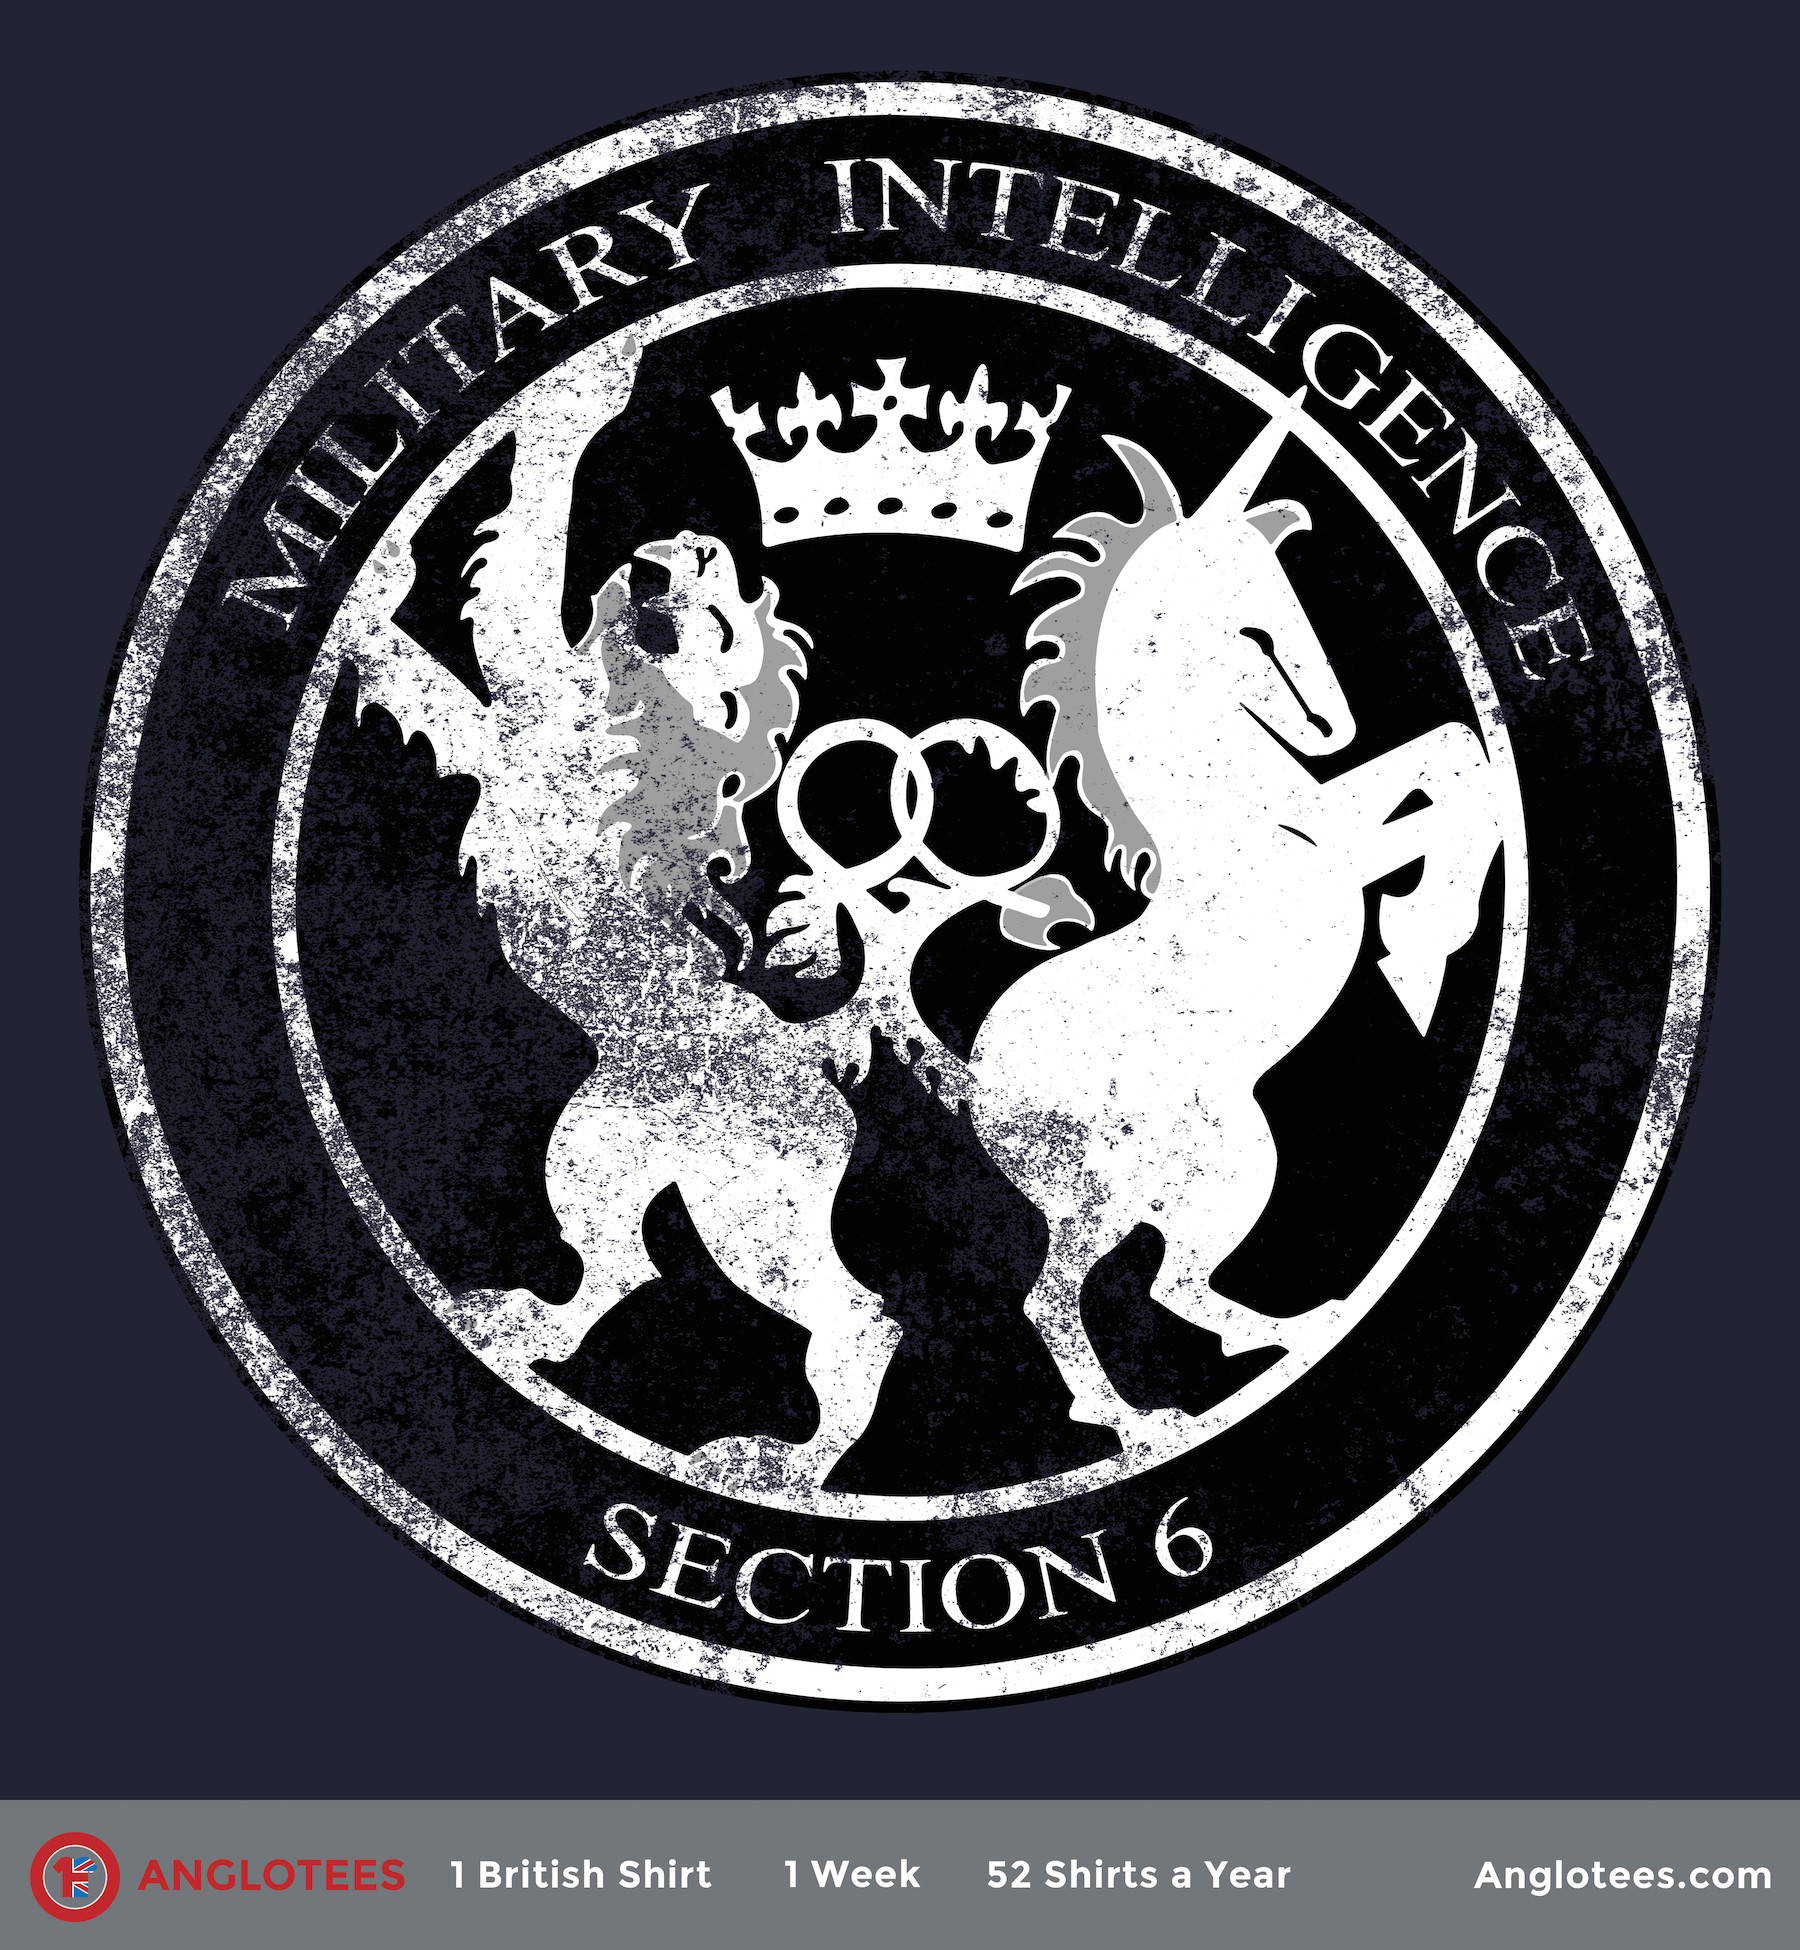 Секретная служба англ Secret Intelligence Service, SIS МИ-6 англ Directorate of Military Intelligence Section 6, MI6 - английская внешняя разведка, часть сообщества специальных служб Великобритании